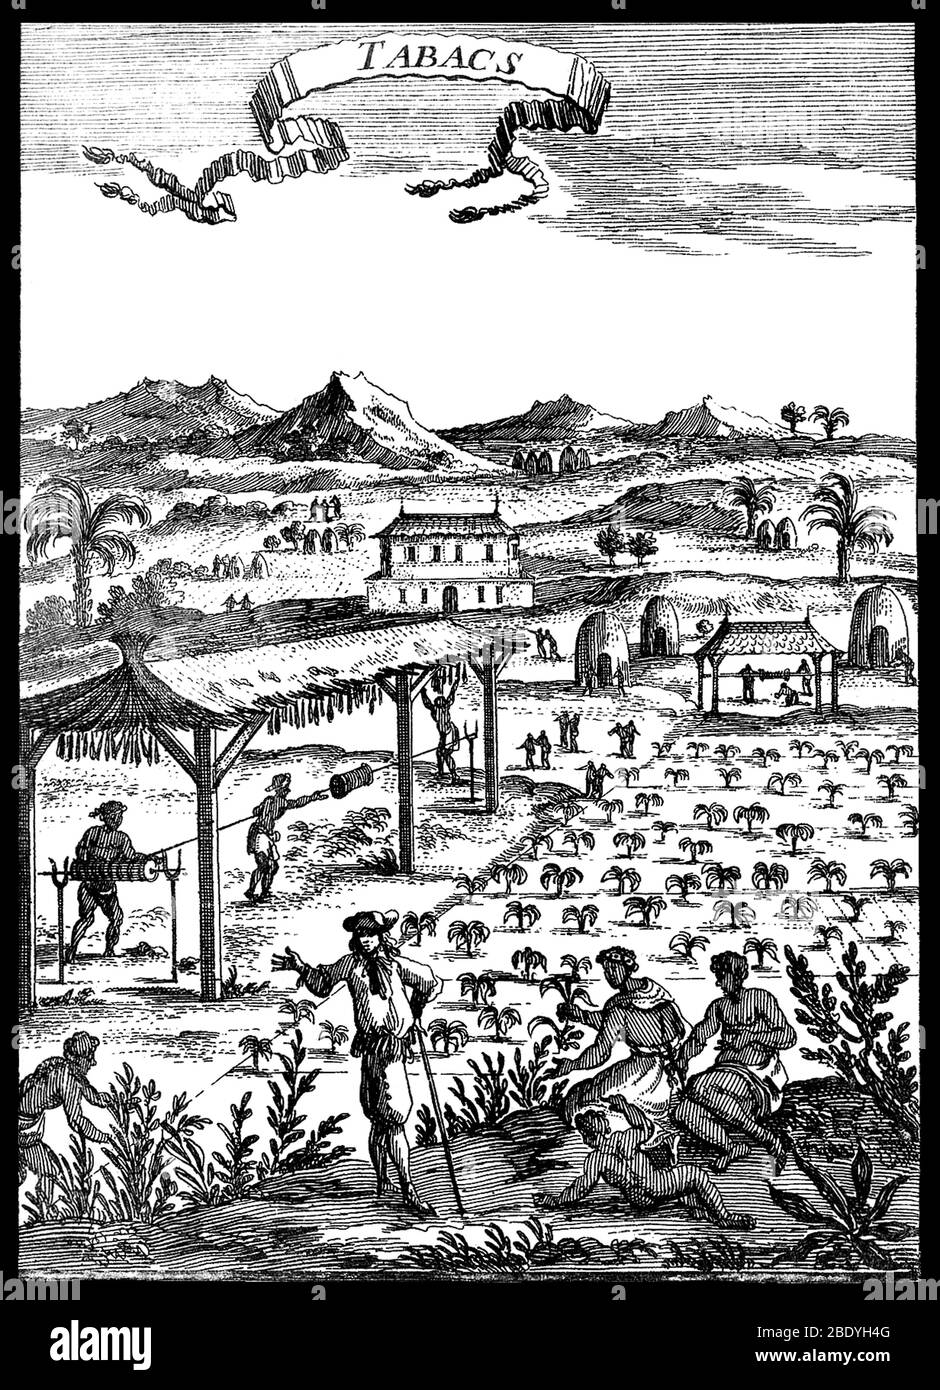 Plantation de tabac avec esclaves, XVIIe siècle Banque D'Images